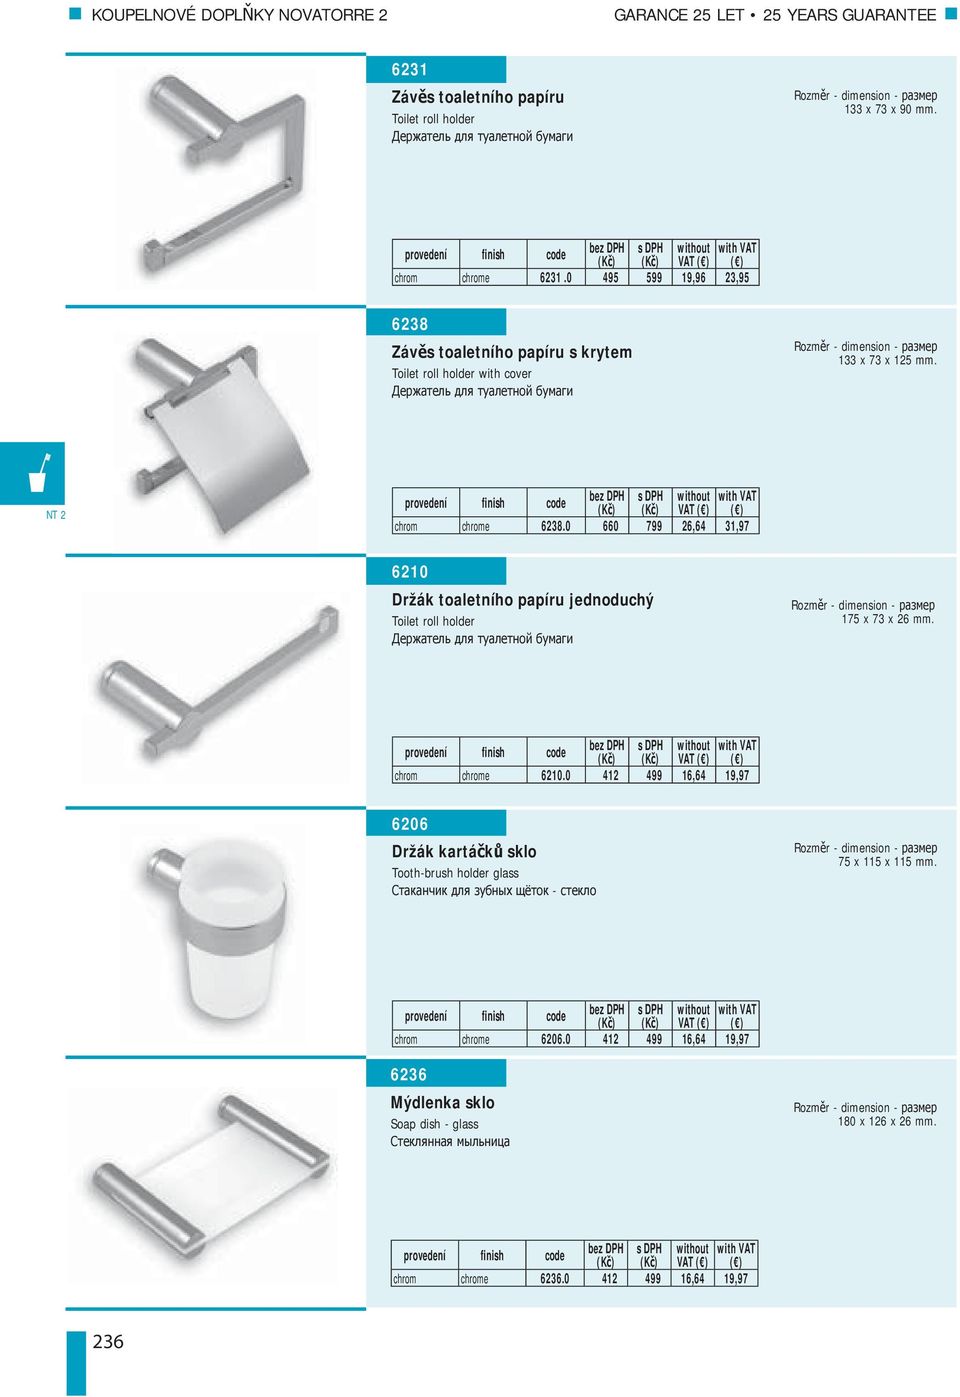 0 660 799 26,64 31,97 6210 Držák toaletního papíru jednoduchý Toilet roll holder 175 x 73 x 26 mm. VAT chrom chrome 6210.